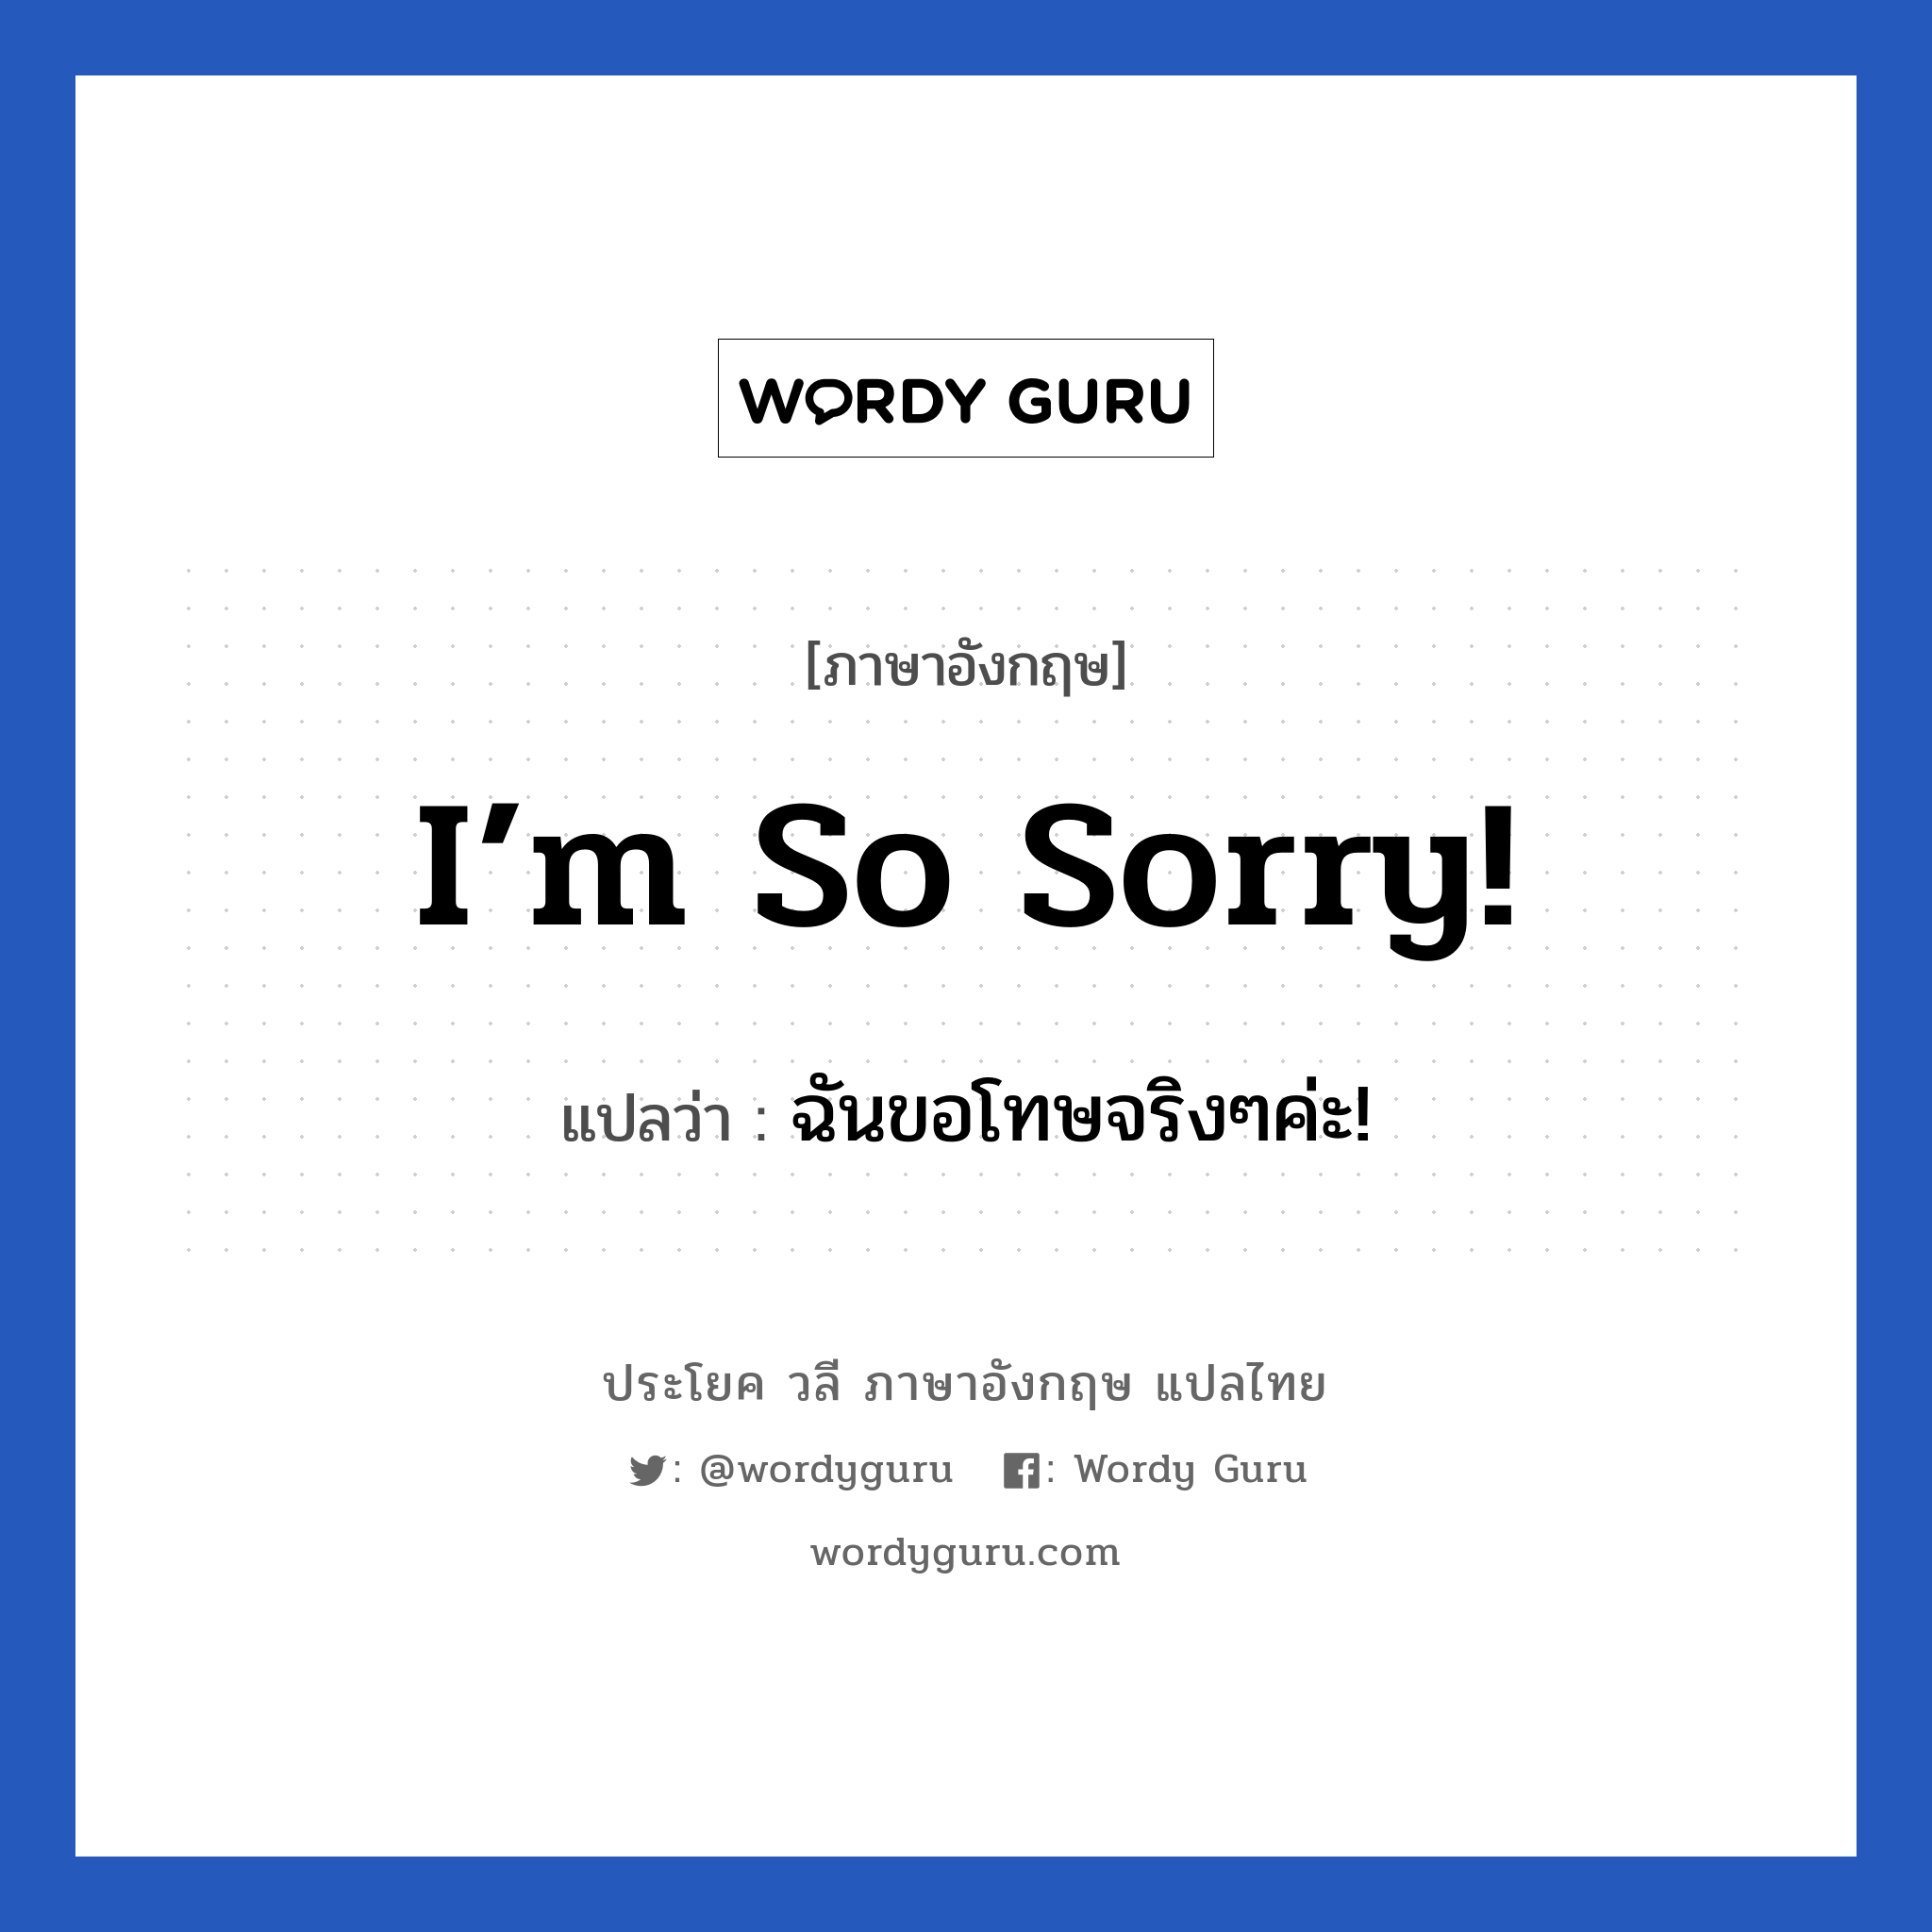 I’m so sorry! แปลว่า?, วลีภาษาอังกฤษ I’m so sorry! แปลว่า ฉันขอโทษจริงๆค่ะ! หมวด ขอโทษ